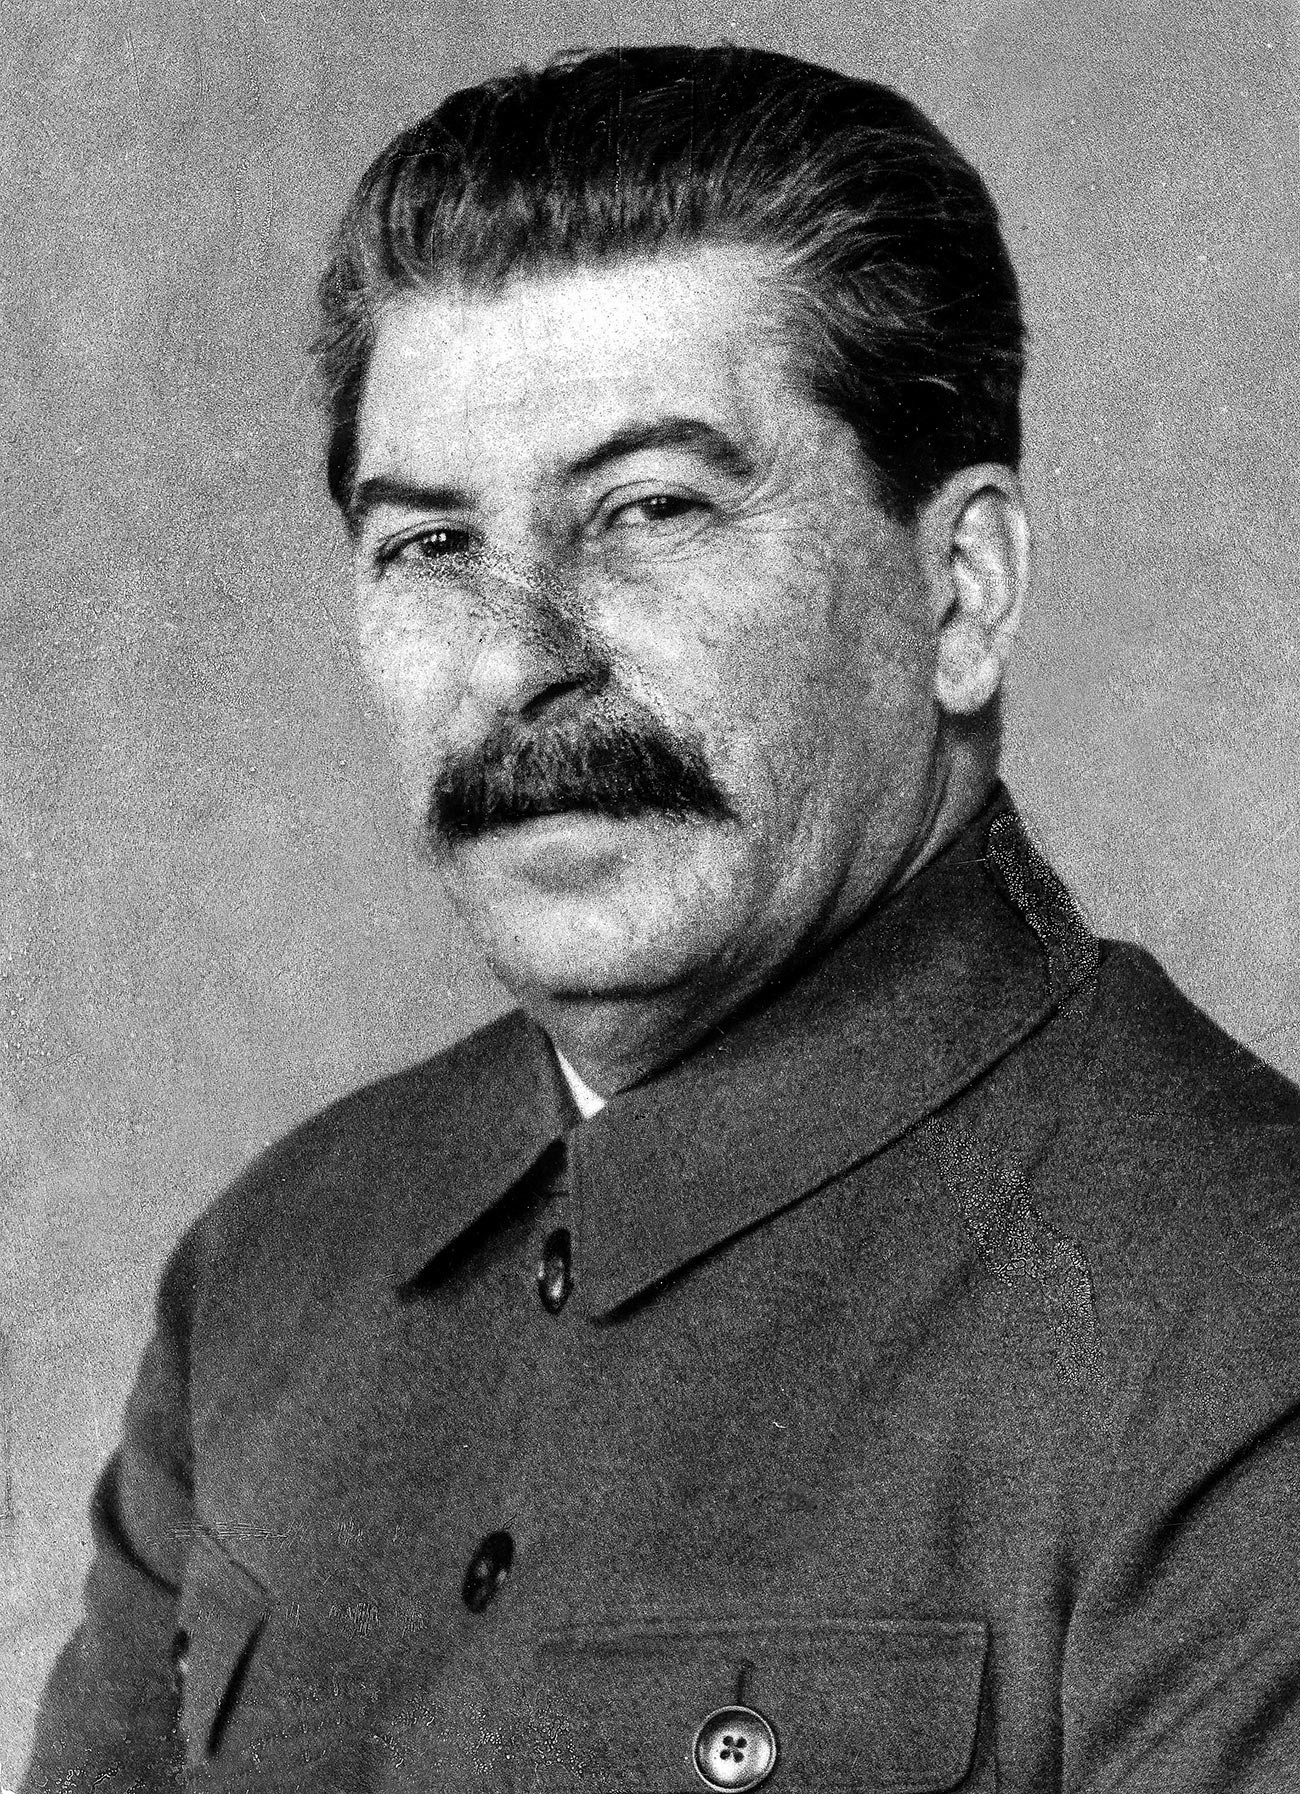 Иосиф Сталин. До сегодняшнего дня фотографии Сталина с оспинами довольно трудно найти и тем более приобрести для коммерческого использования.